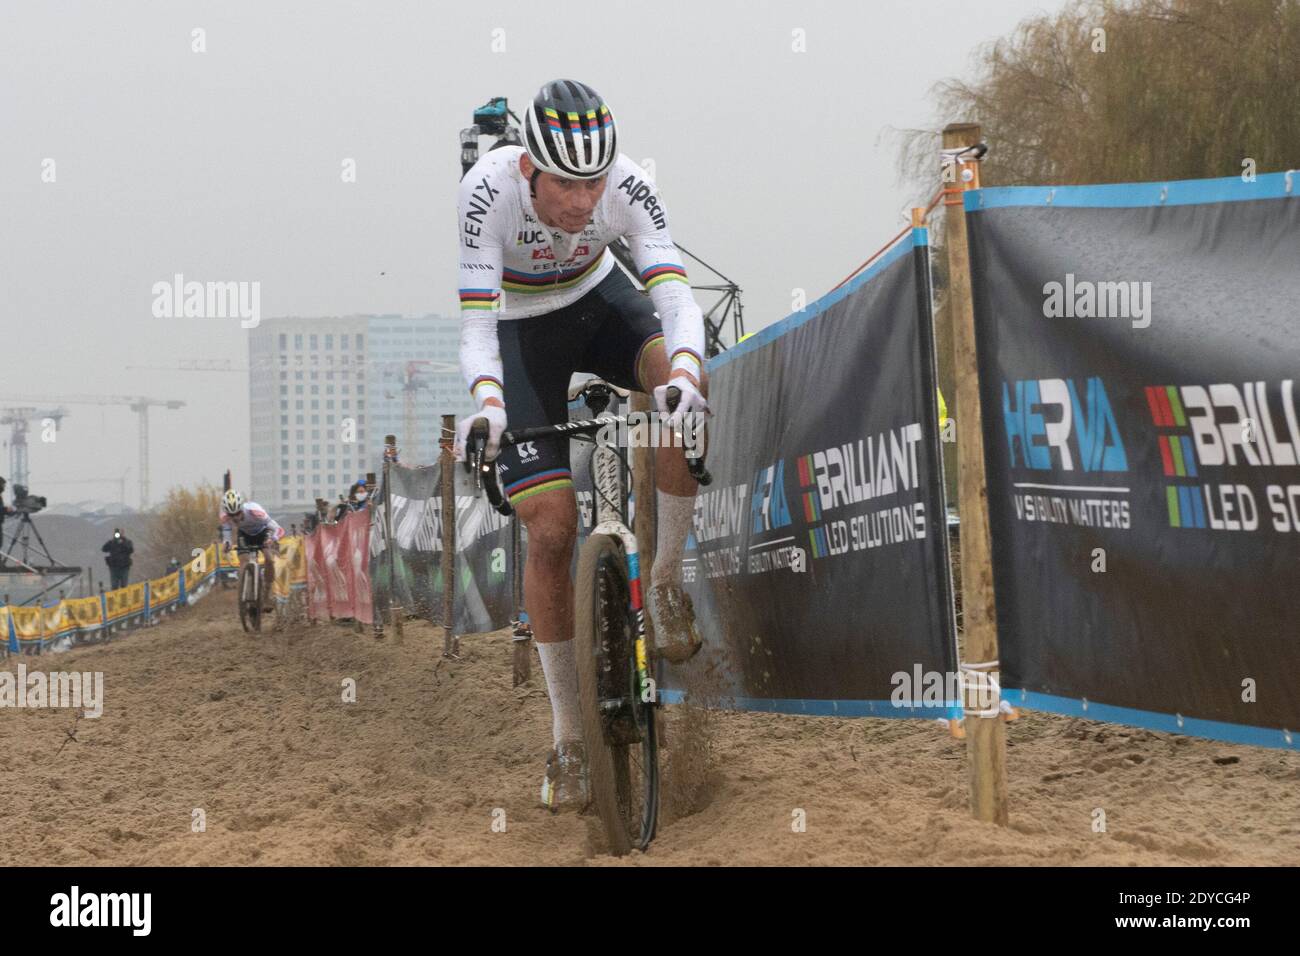 ANTWERPEN, BELGIEN - DEZEMBER 12: Mathieu van der Poel wint bij zijn rentree in Antwerpen während des Elite Cyclocross Scheldecross am 12. Dezember 202 Stockfoto